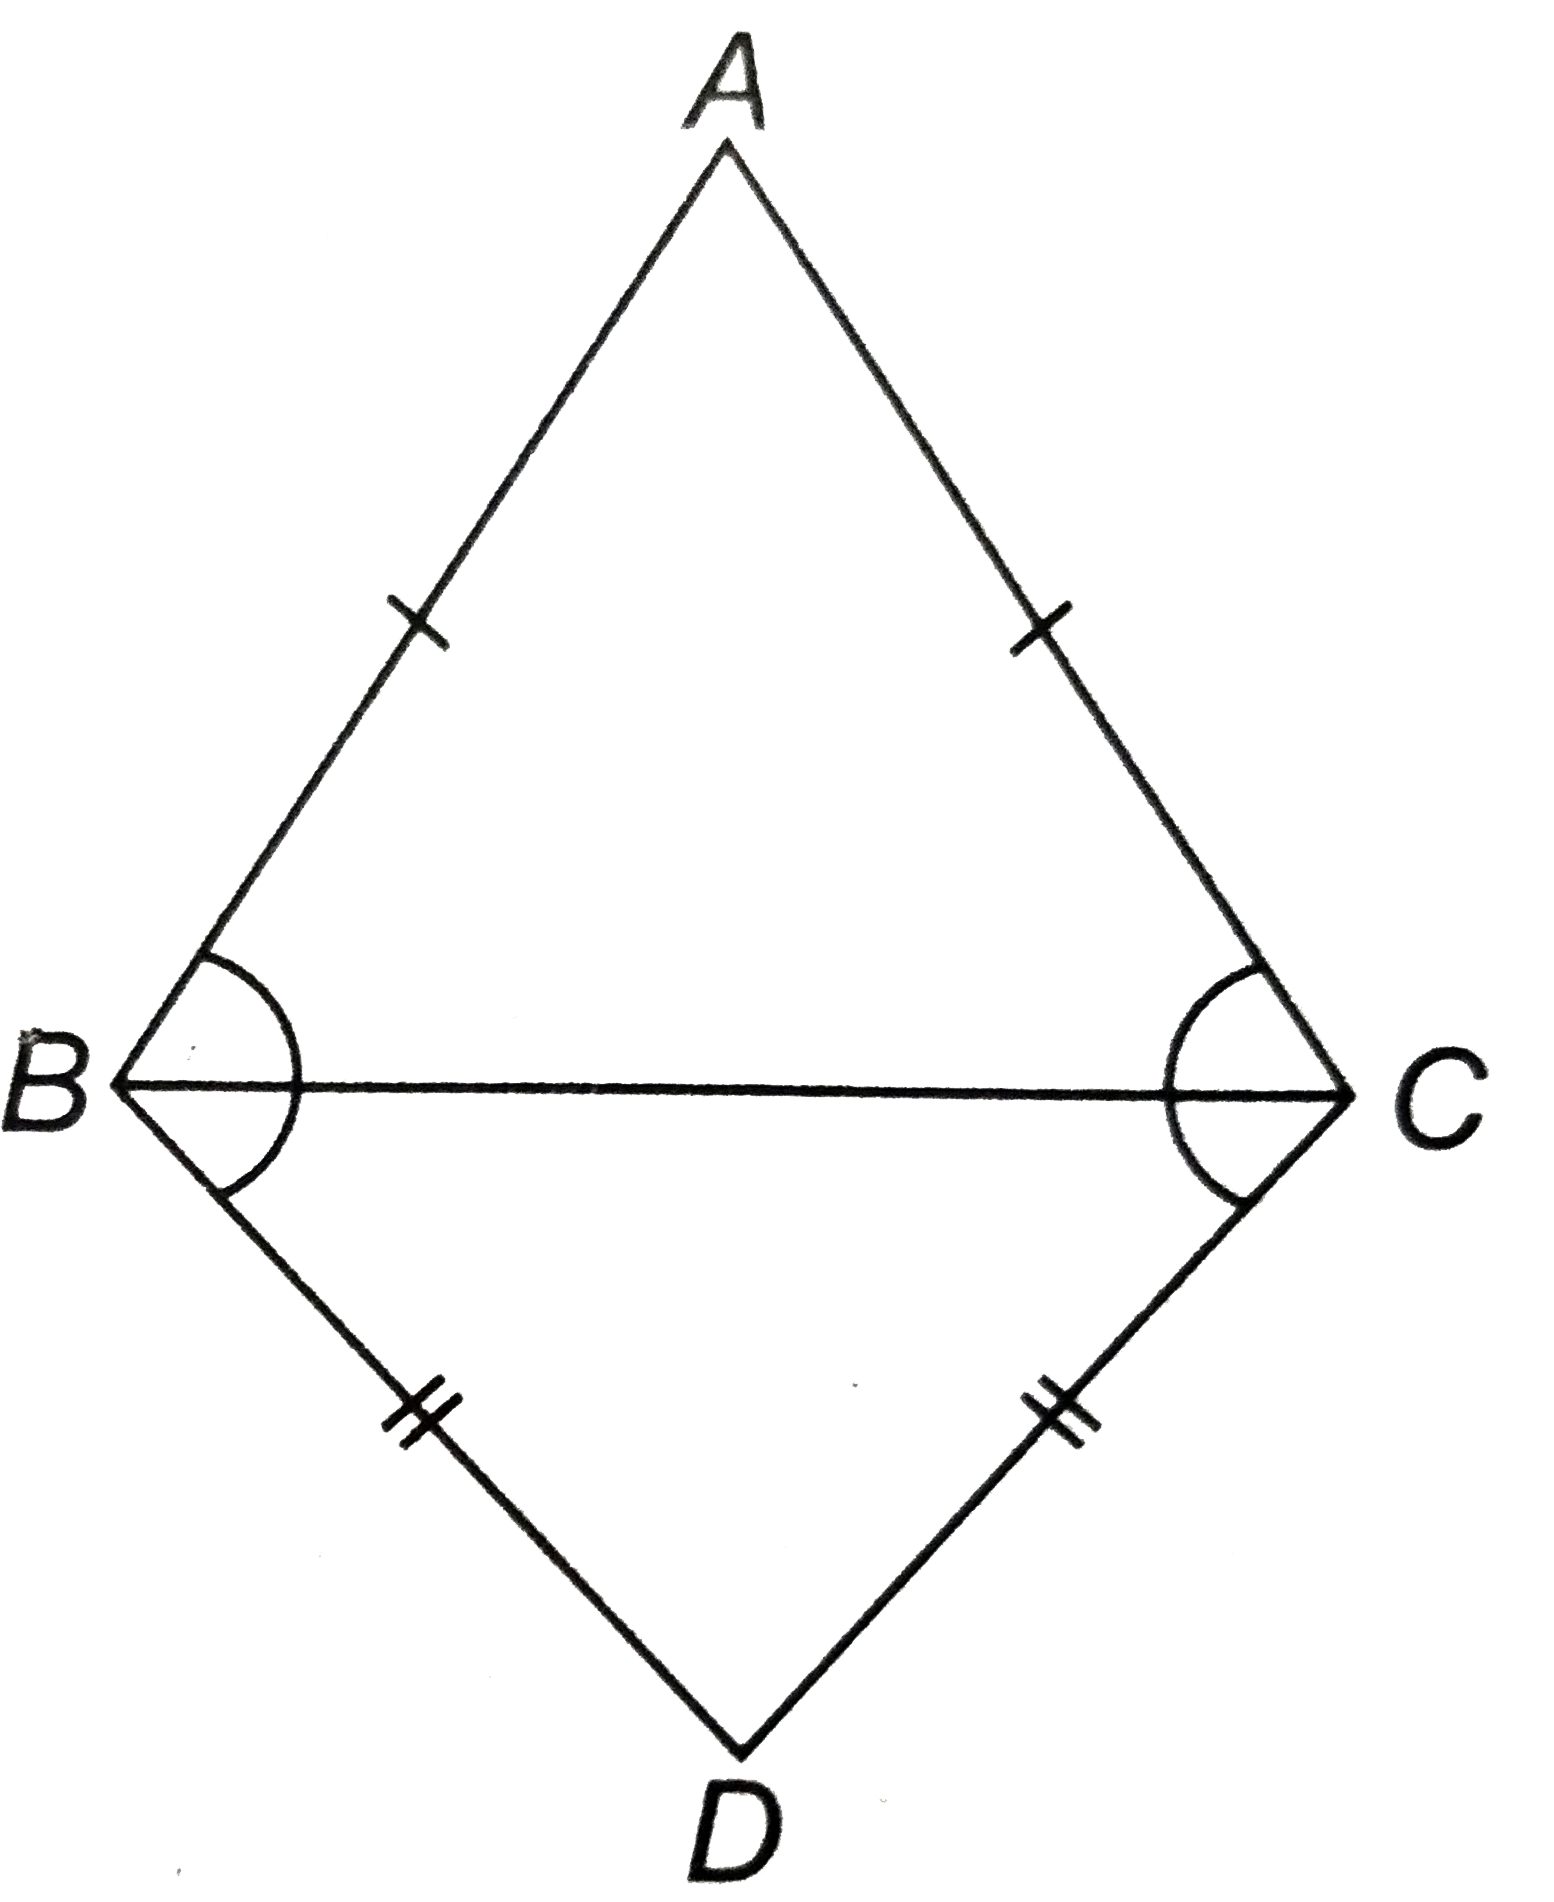 ABC और DBC समान आधार BC पर स्थित दो समद्विबाहु त्रिभुज है (देखिए आकृति)। दर्शाइए कि angleABD=angleACD है।